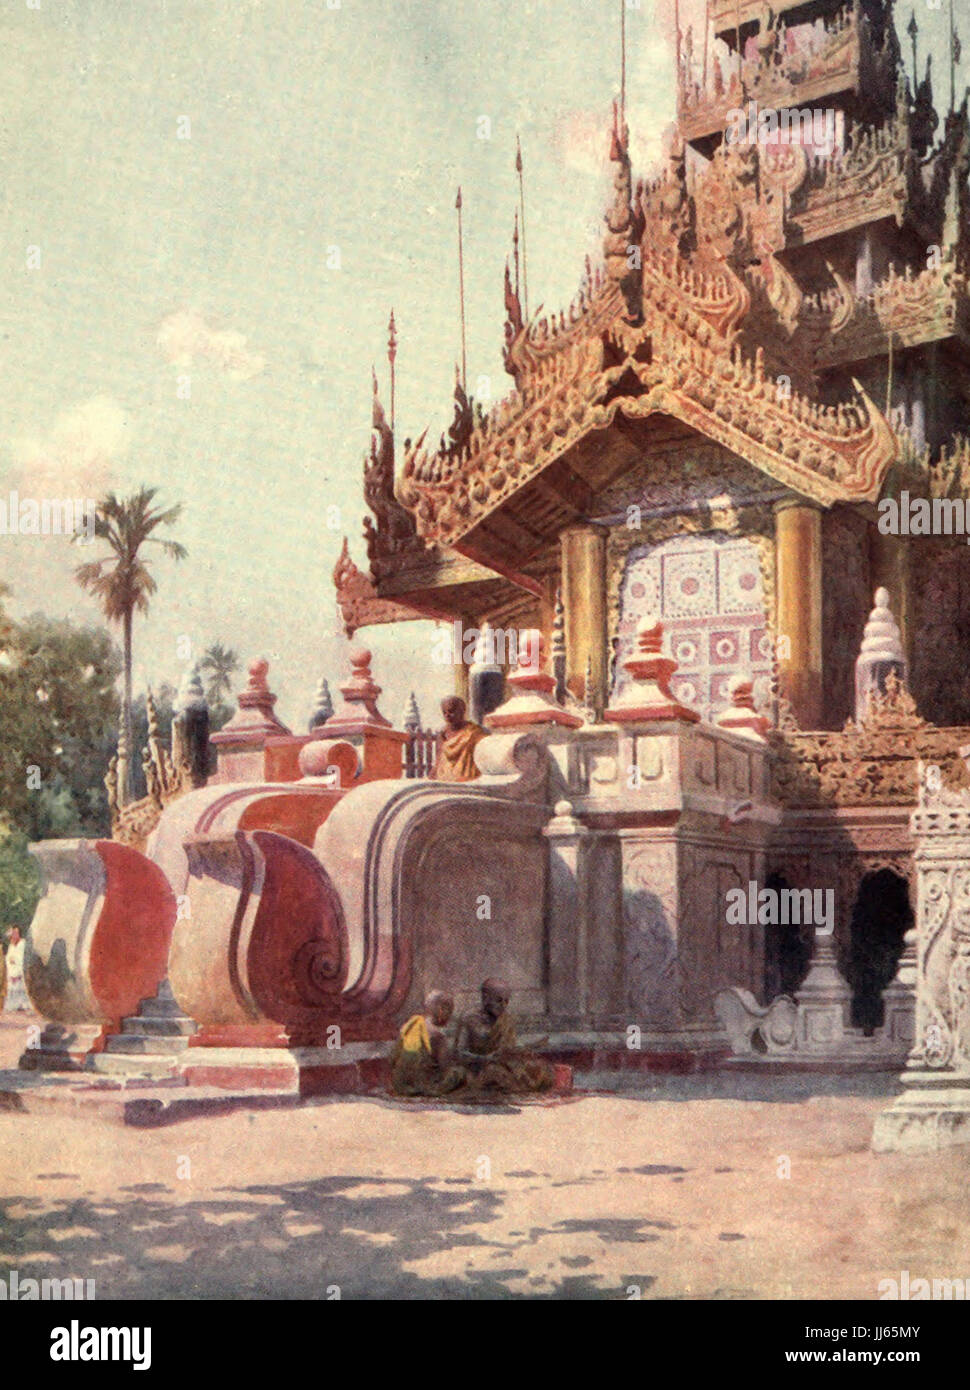 El Queen's Golden Monasterio, Mandalay, Birmania, circa 1908 Foto de stock